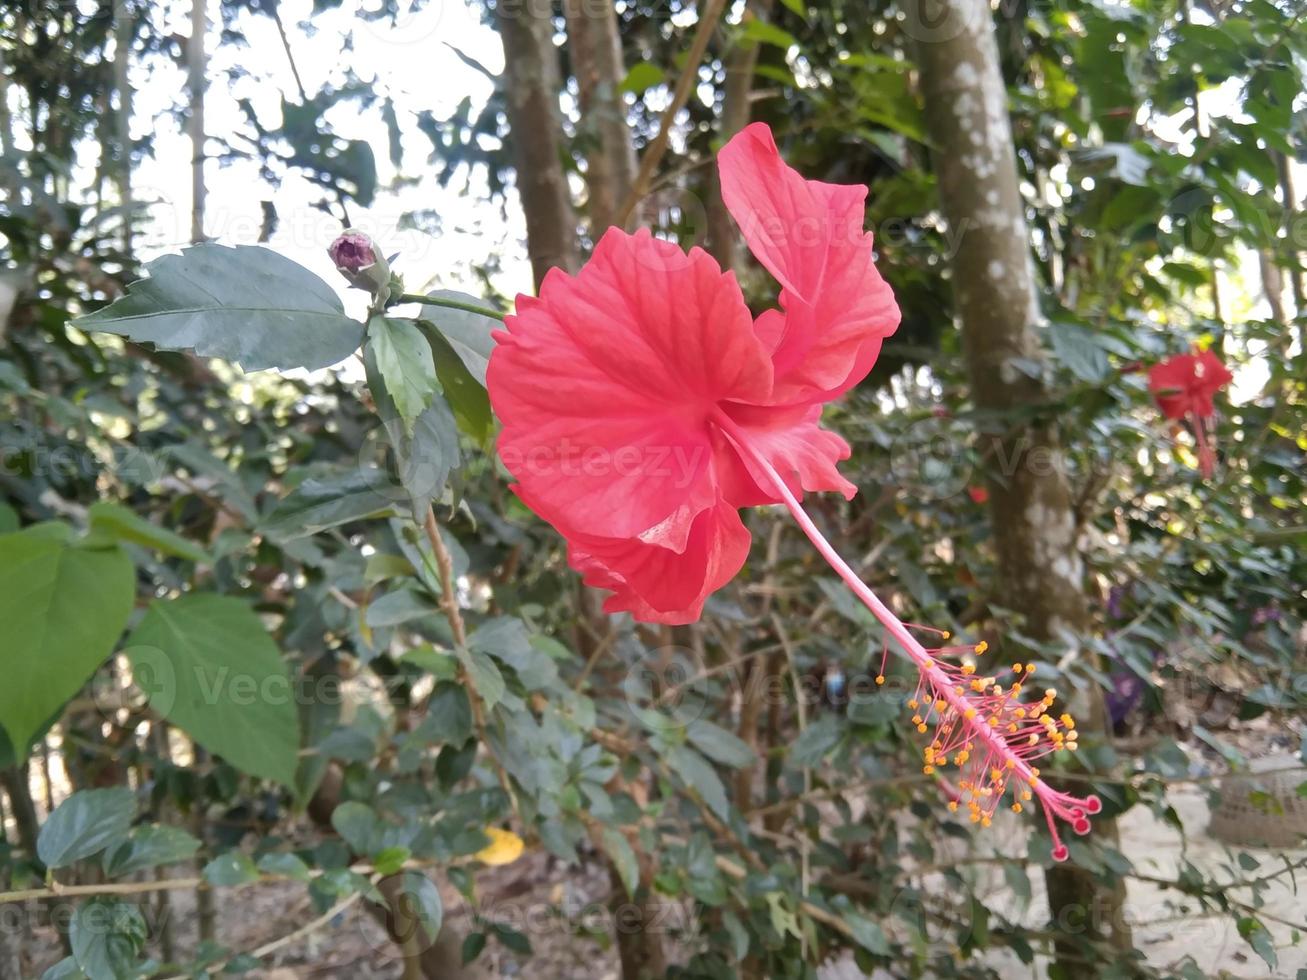 flor de hibisco rojo foto